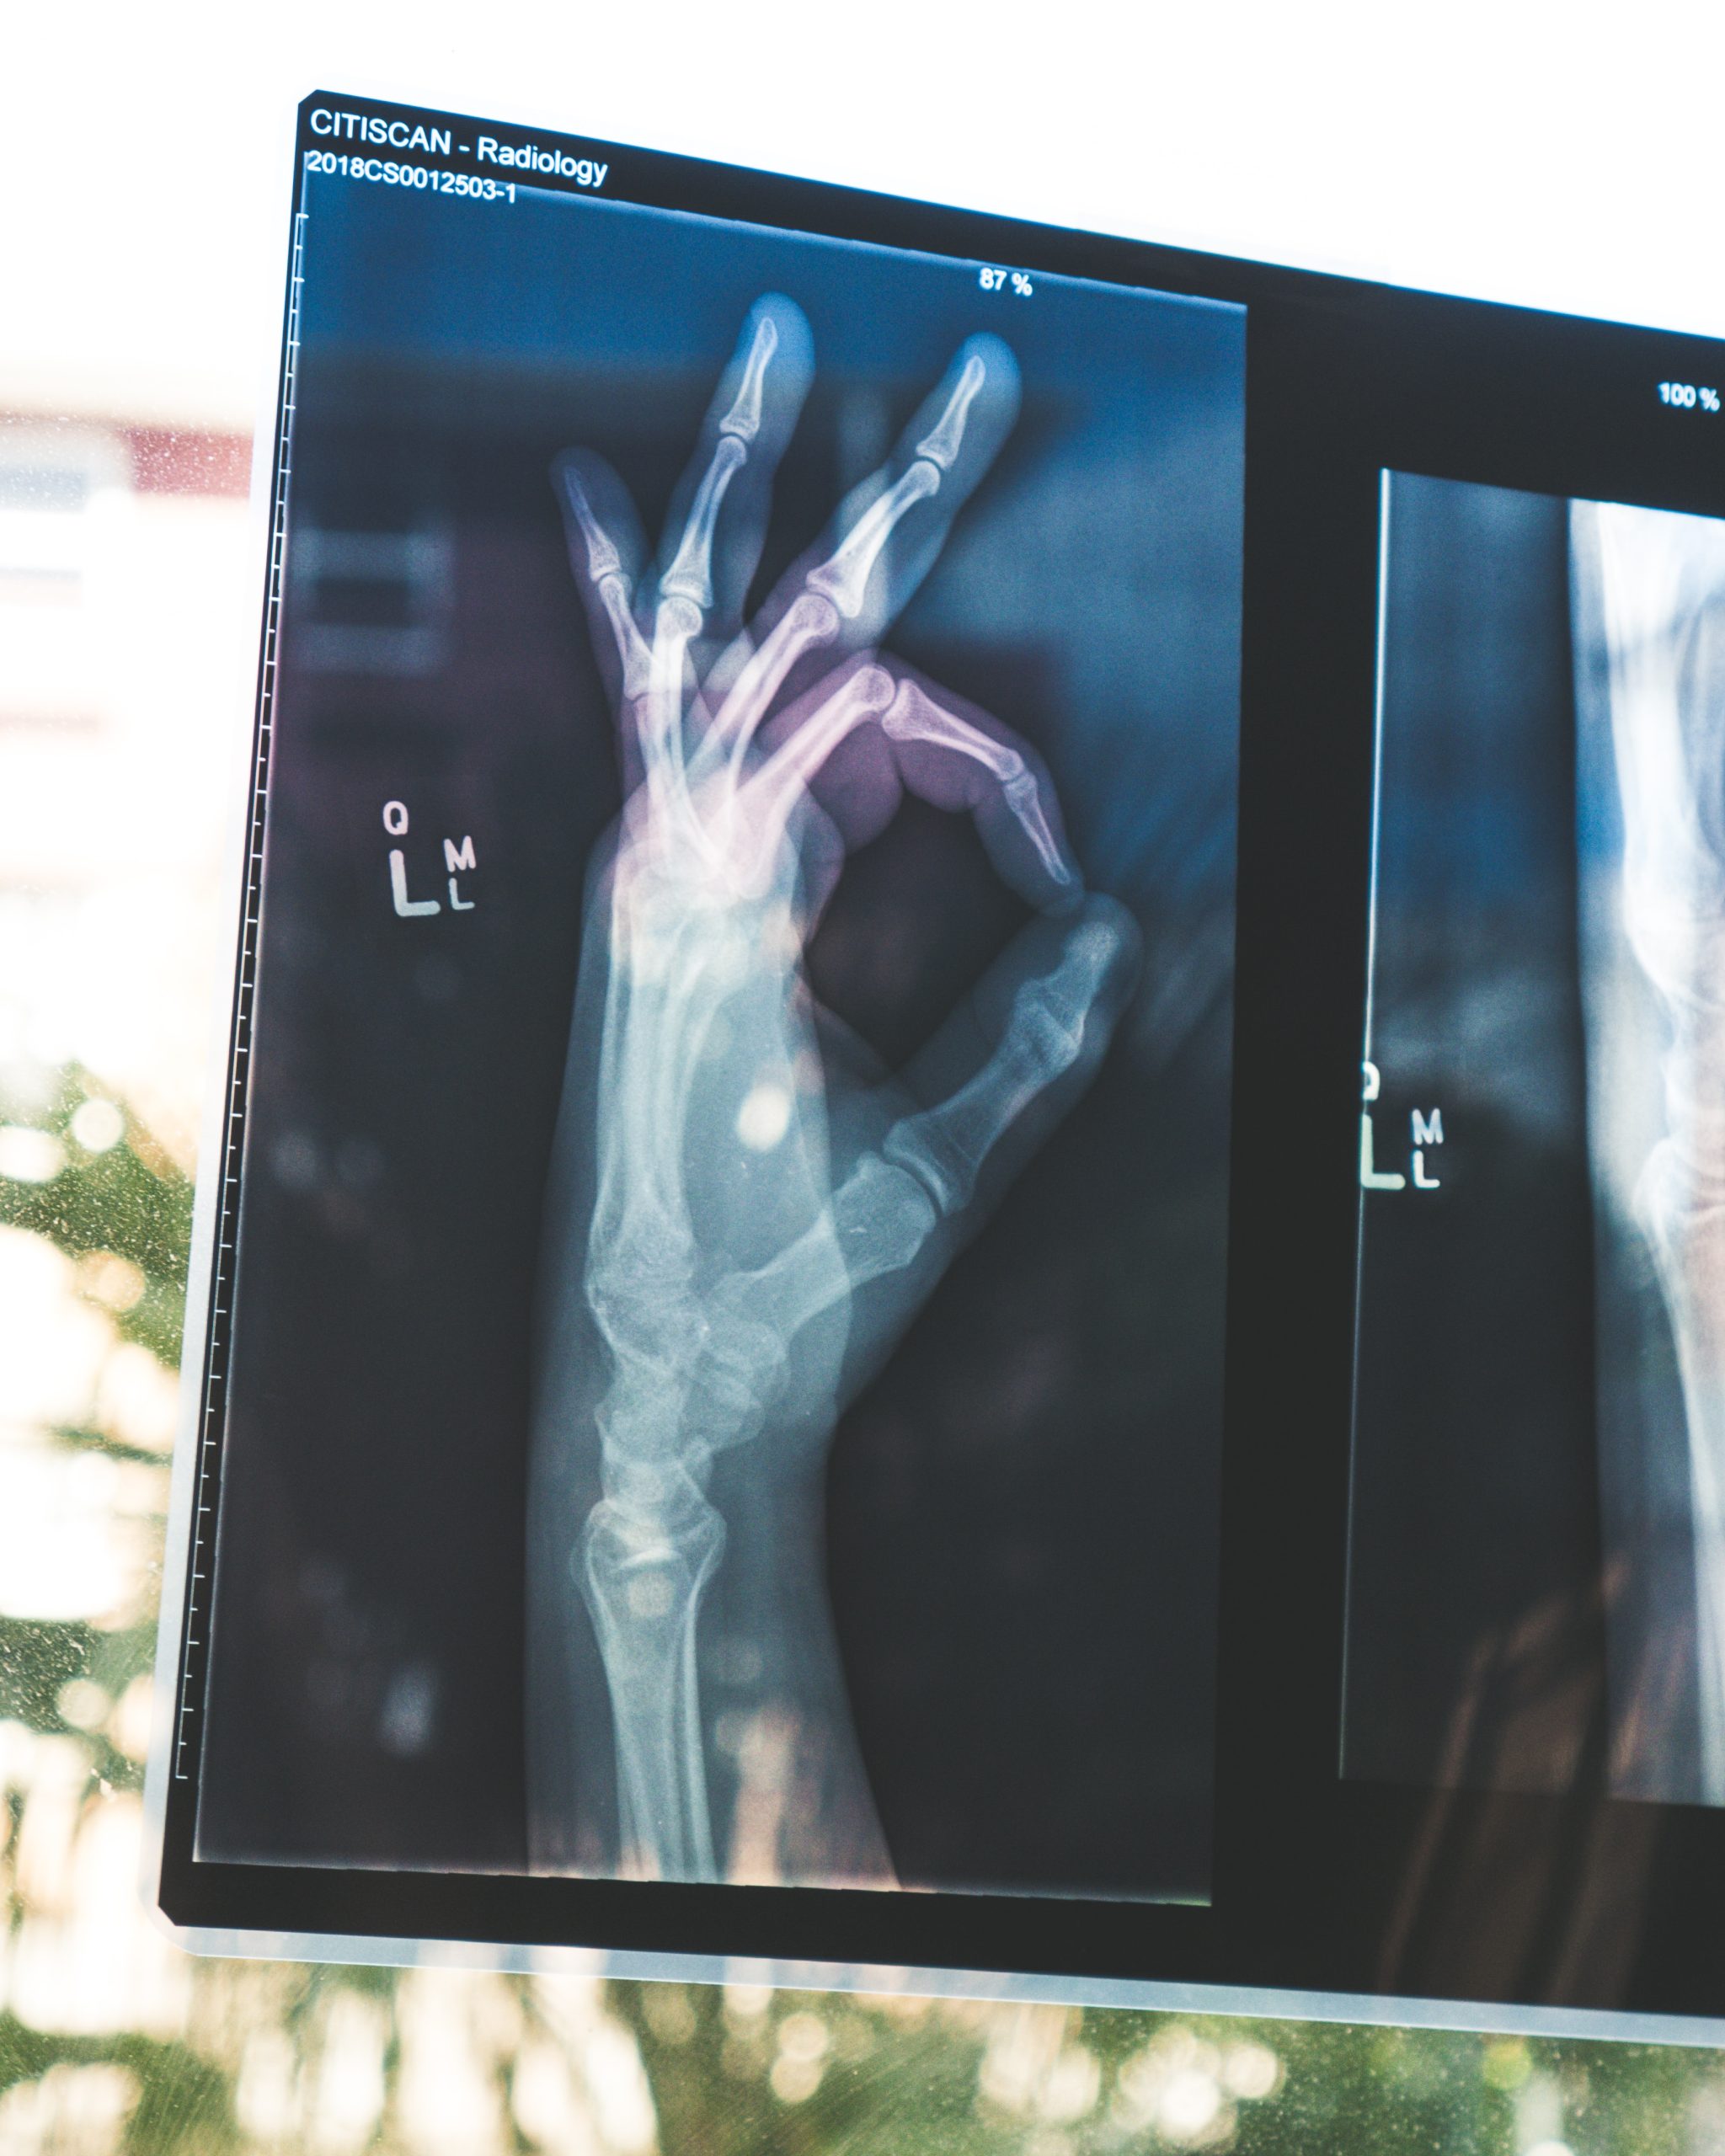 An x - ray of a hand with an x - ray of a hand.